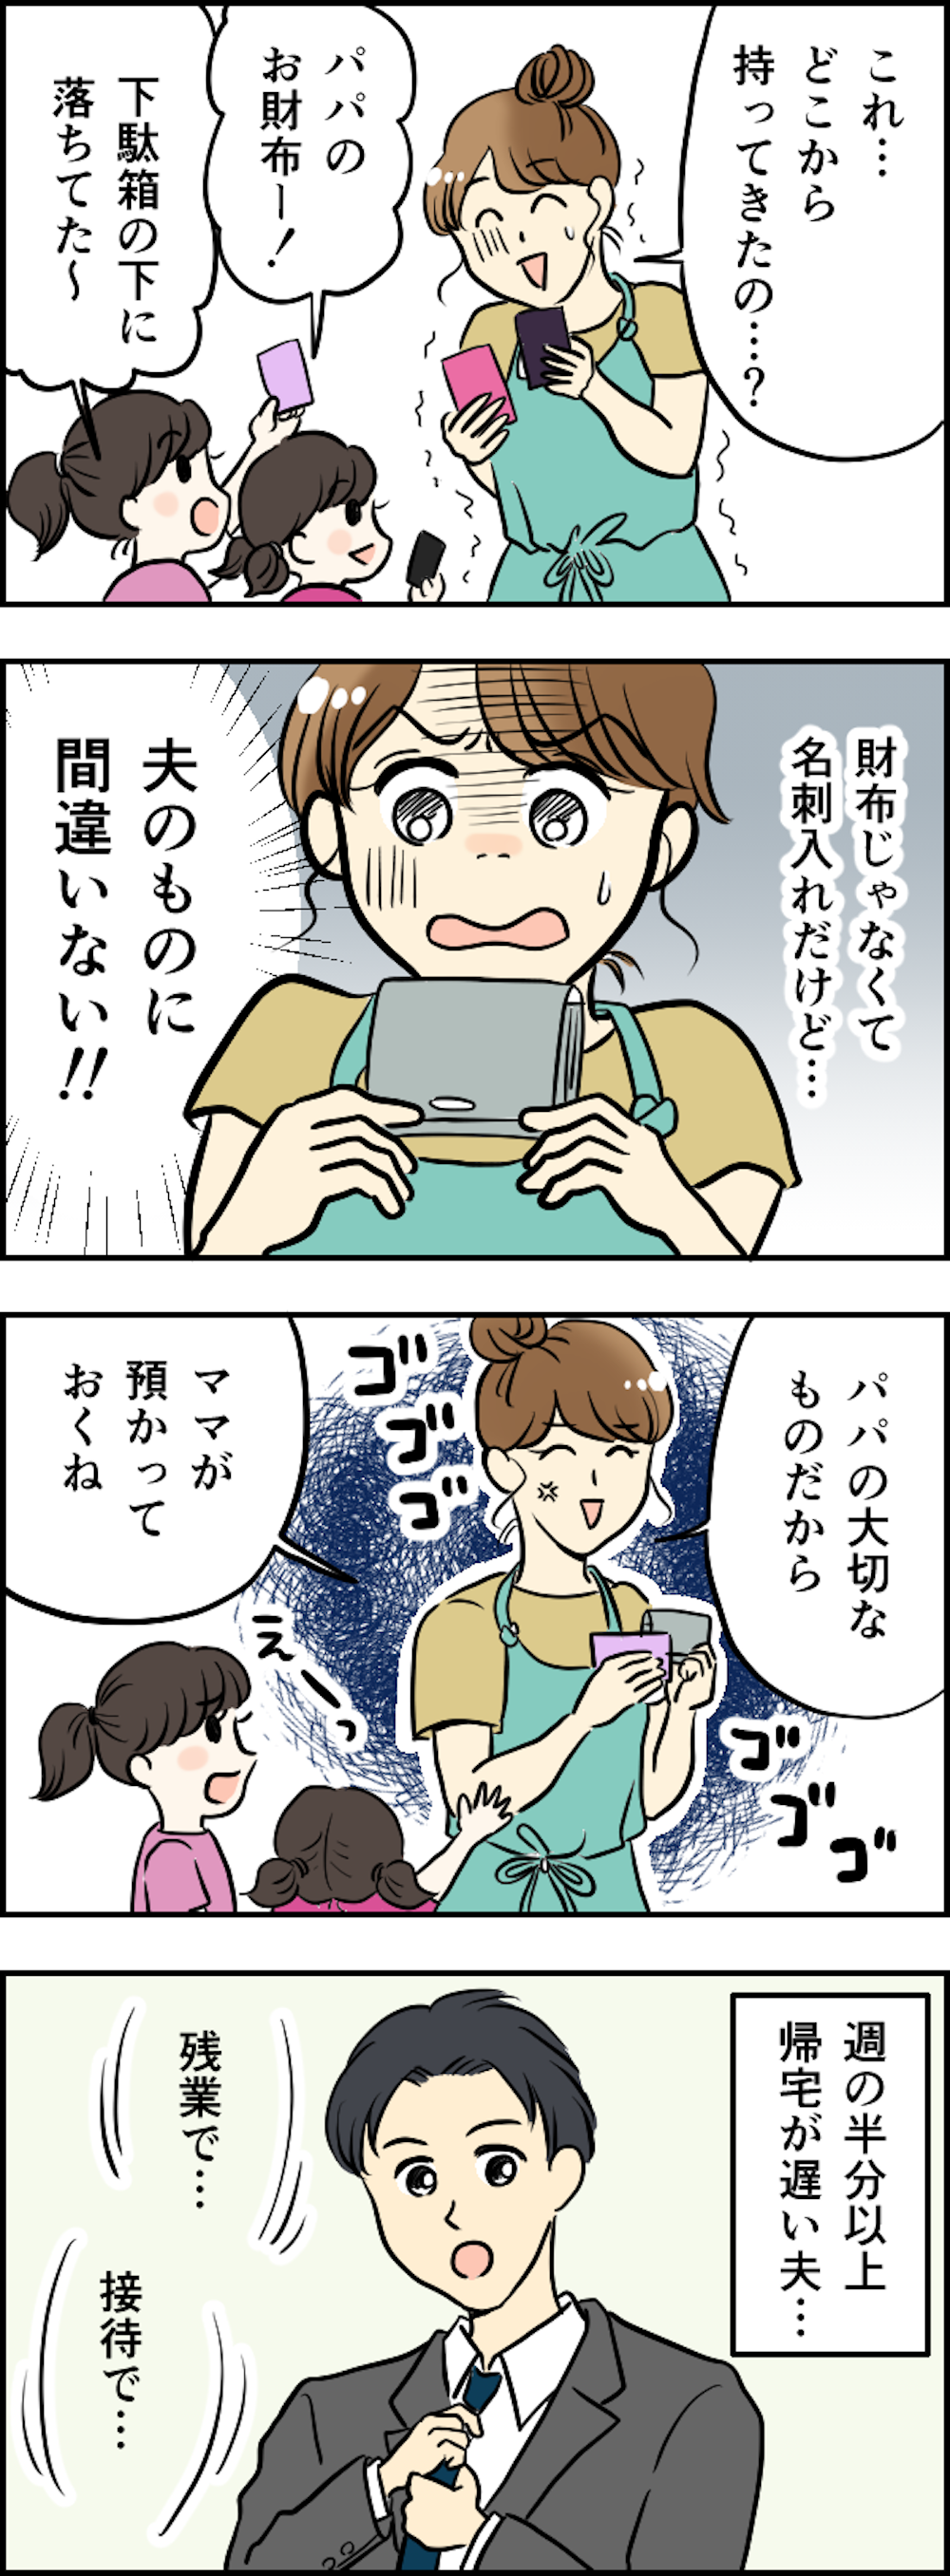 【漫画】私、裏切られていたの？ 娘たちが「夫の名刺入れ」から抜いて遊んでいたカードは...＜前編＞ kansei_002.png